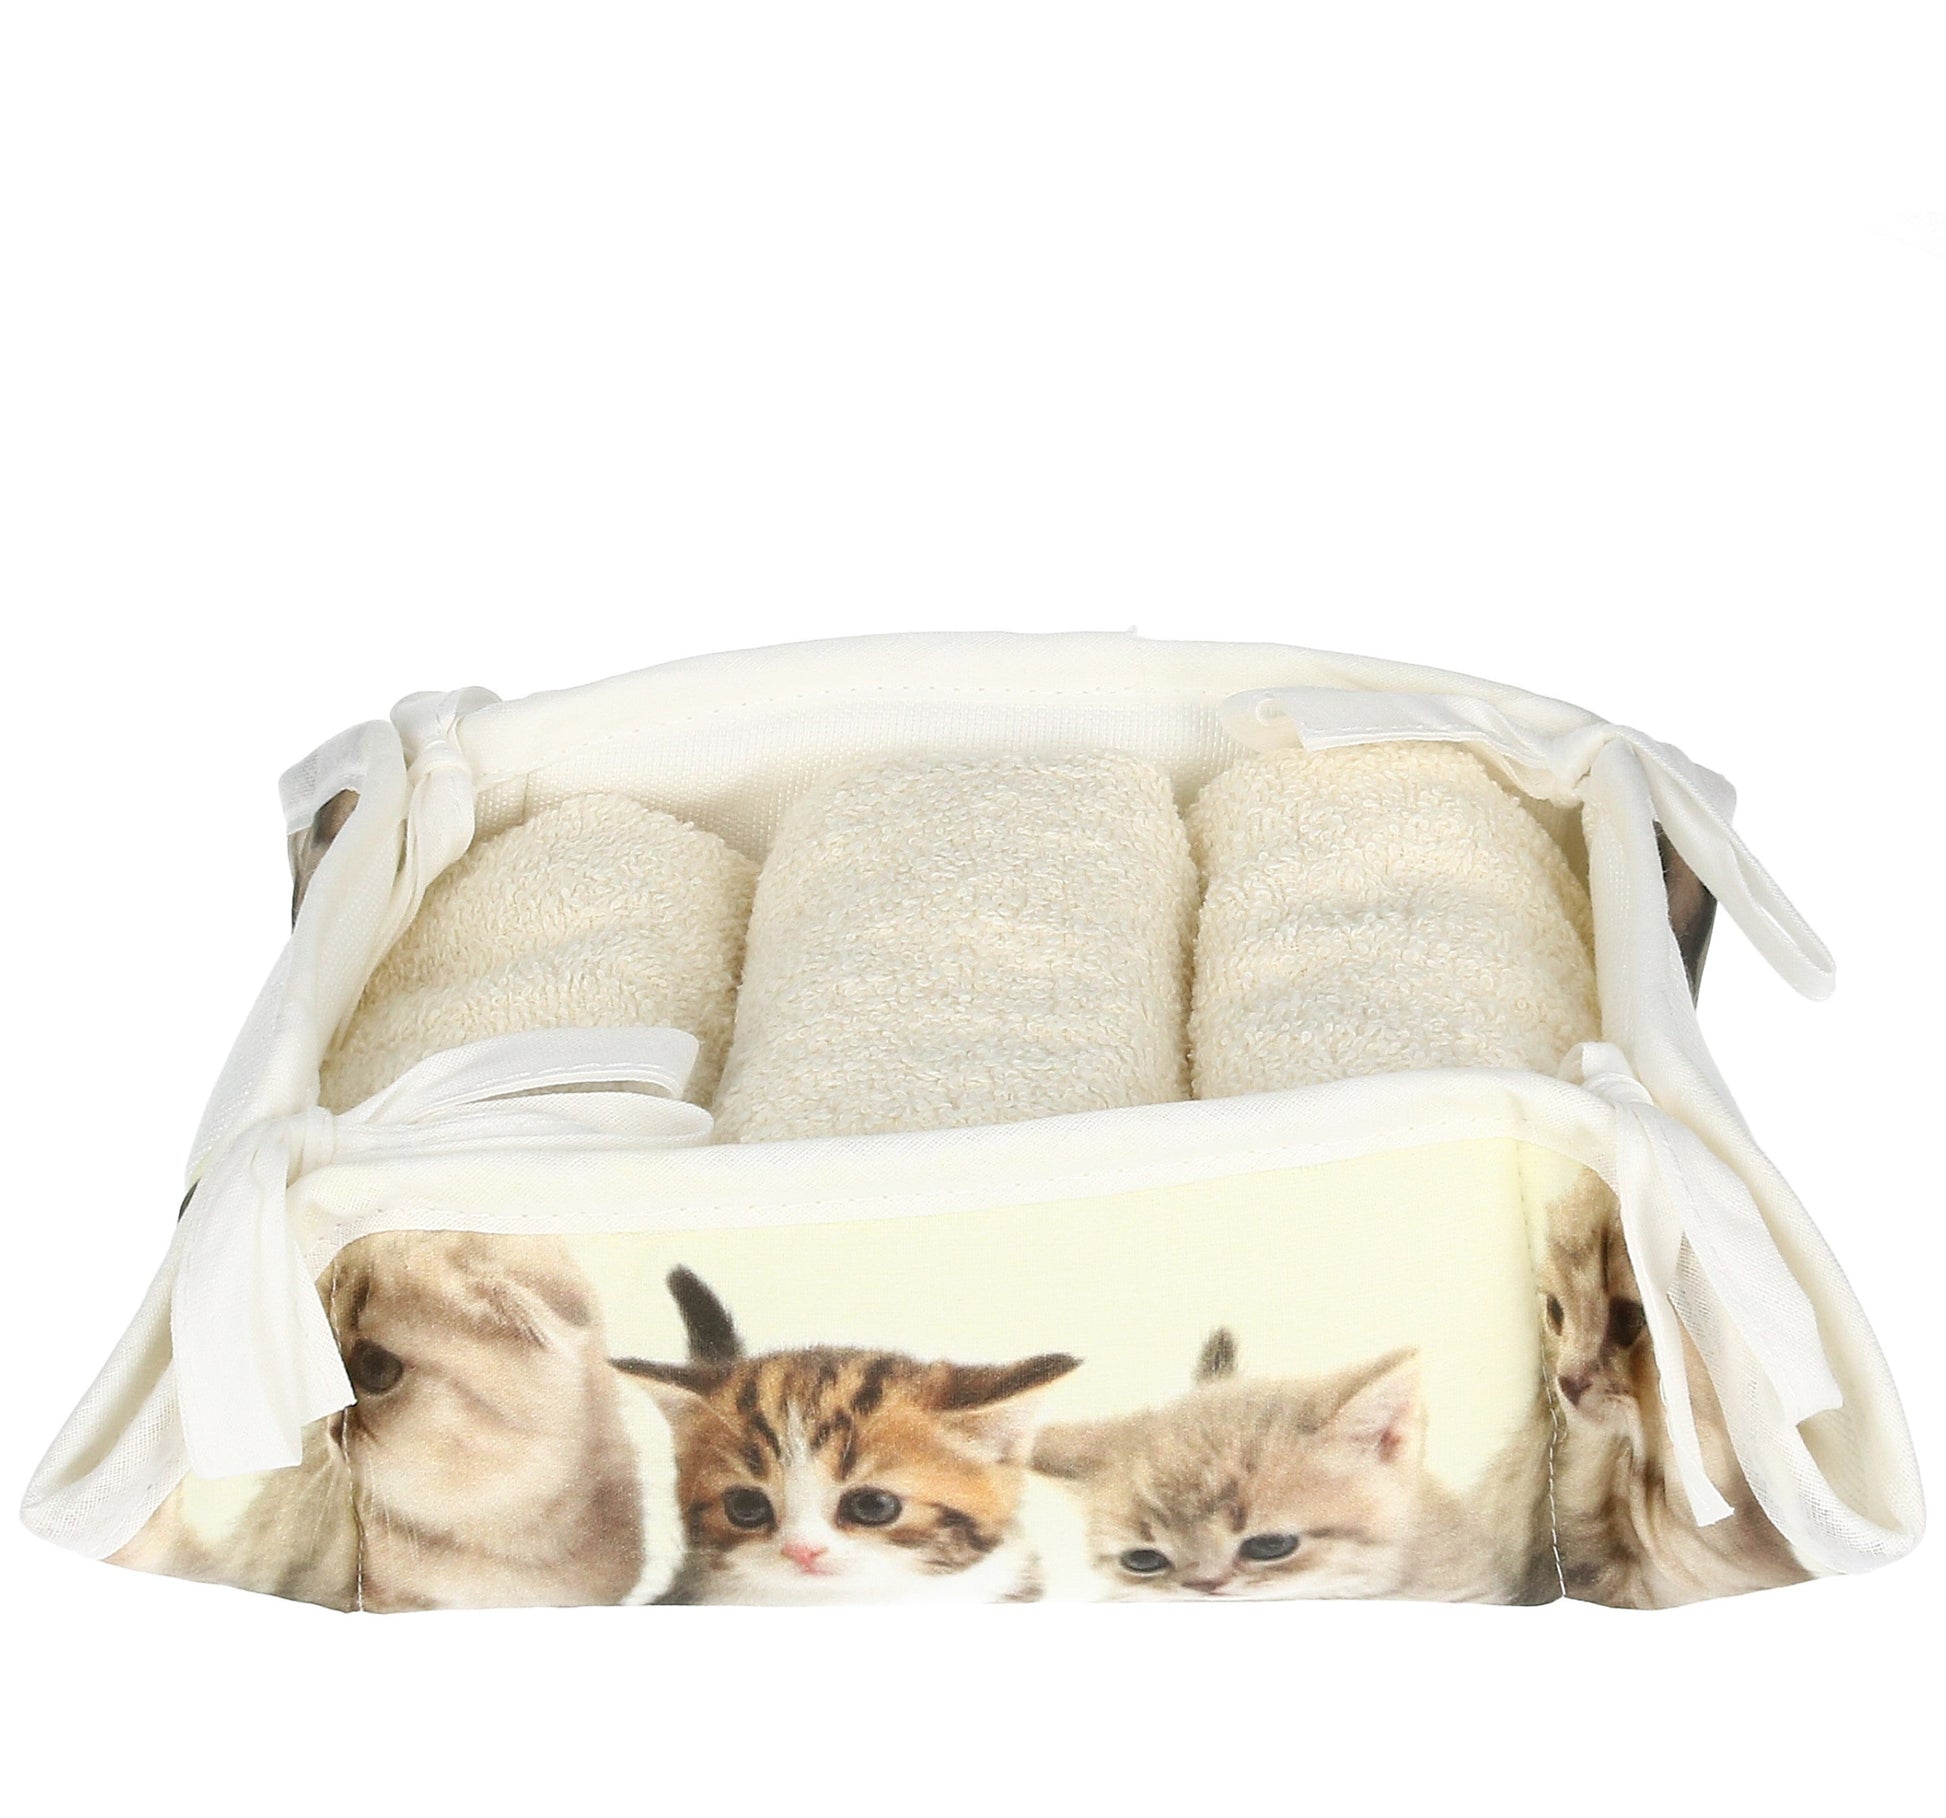 Waschlappen im Stoffkorb mit Katzen Motiv